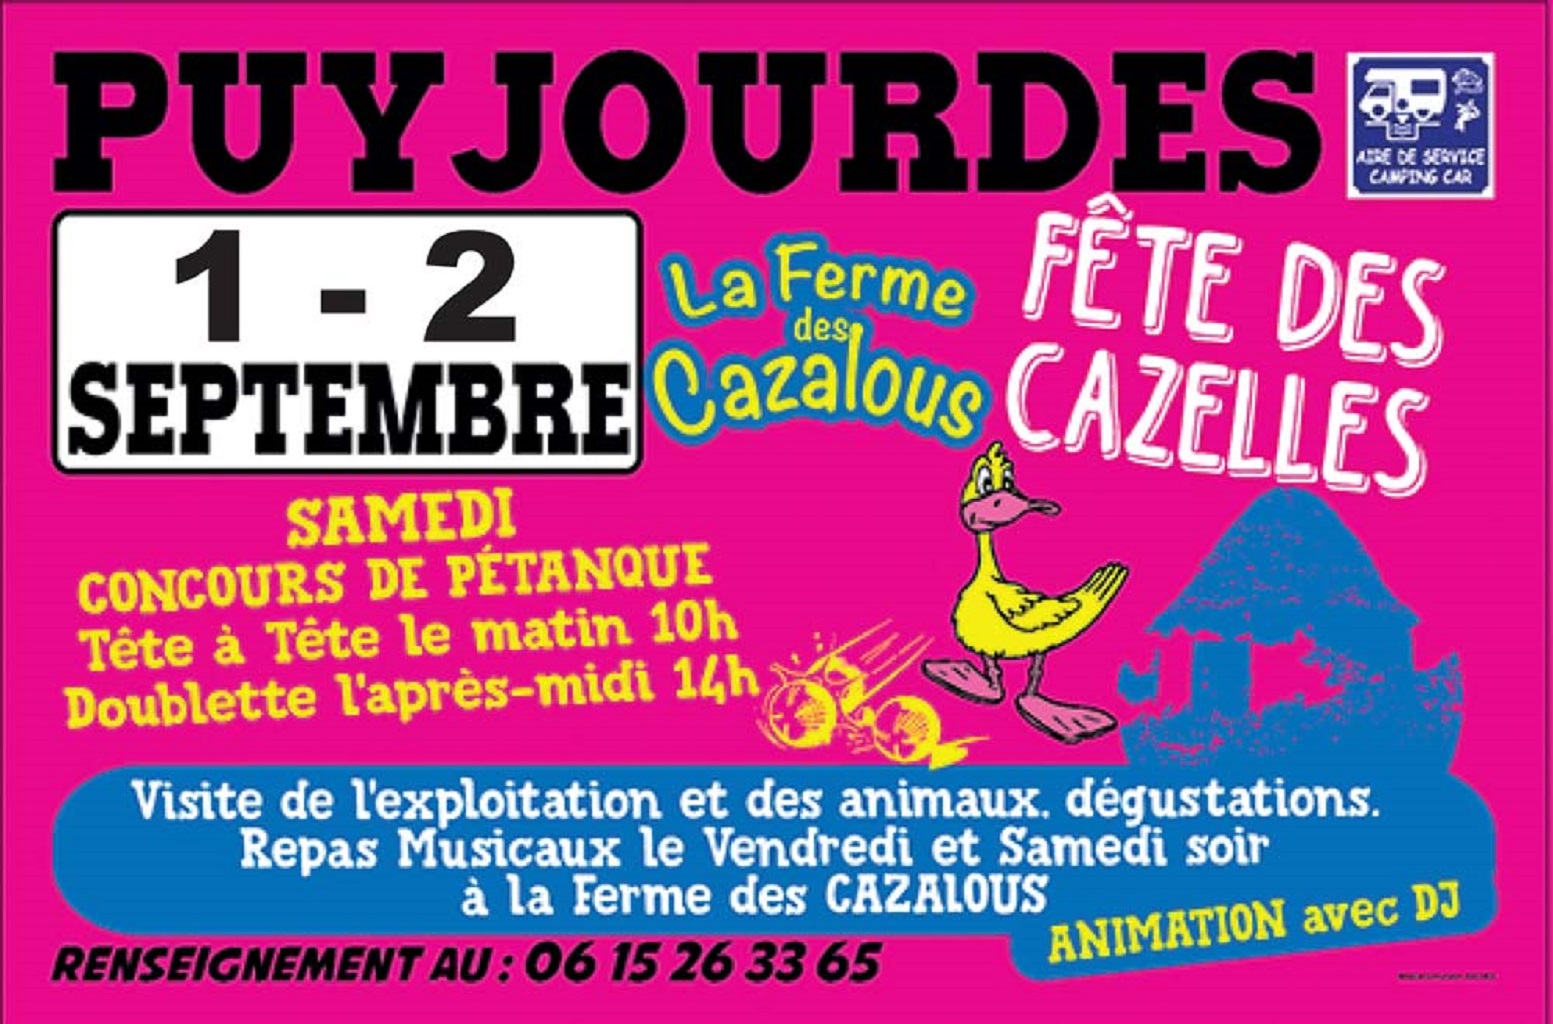 Figeac : La fête des cazelles à la Ferme Des Cazalous à Puyjourdes